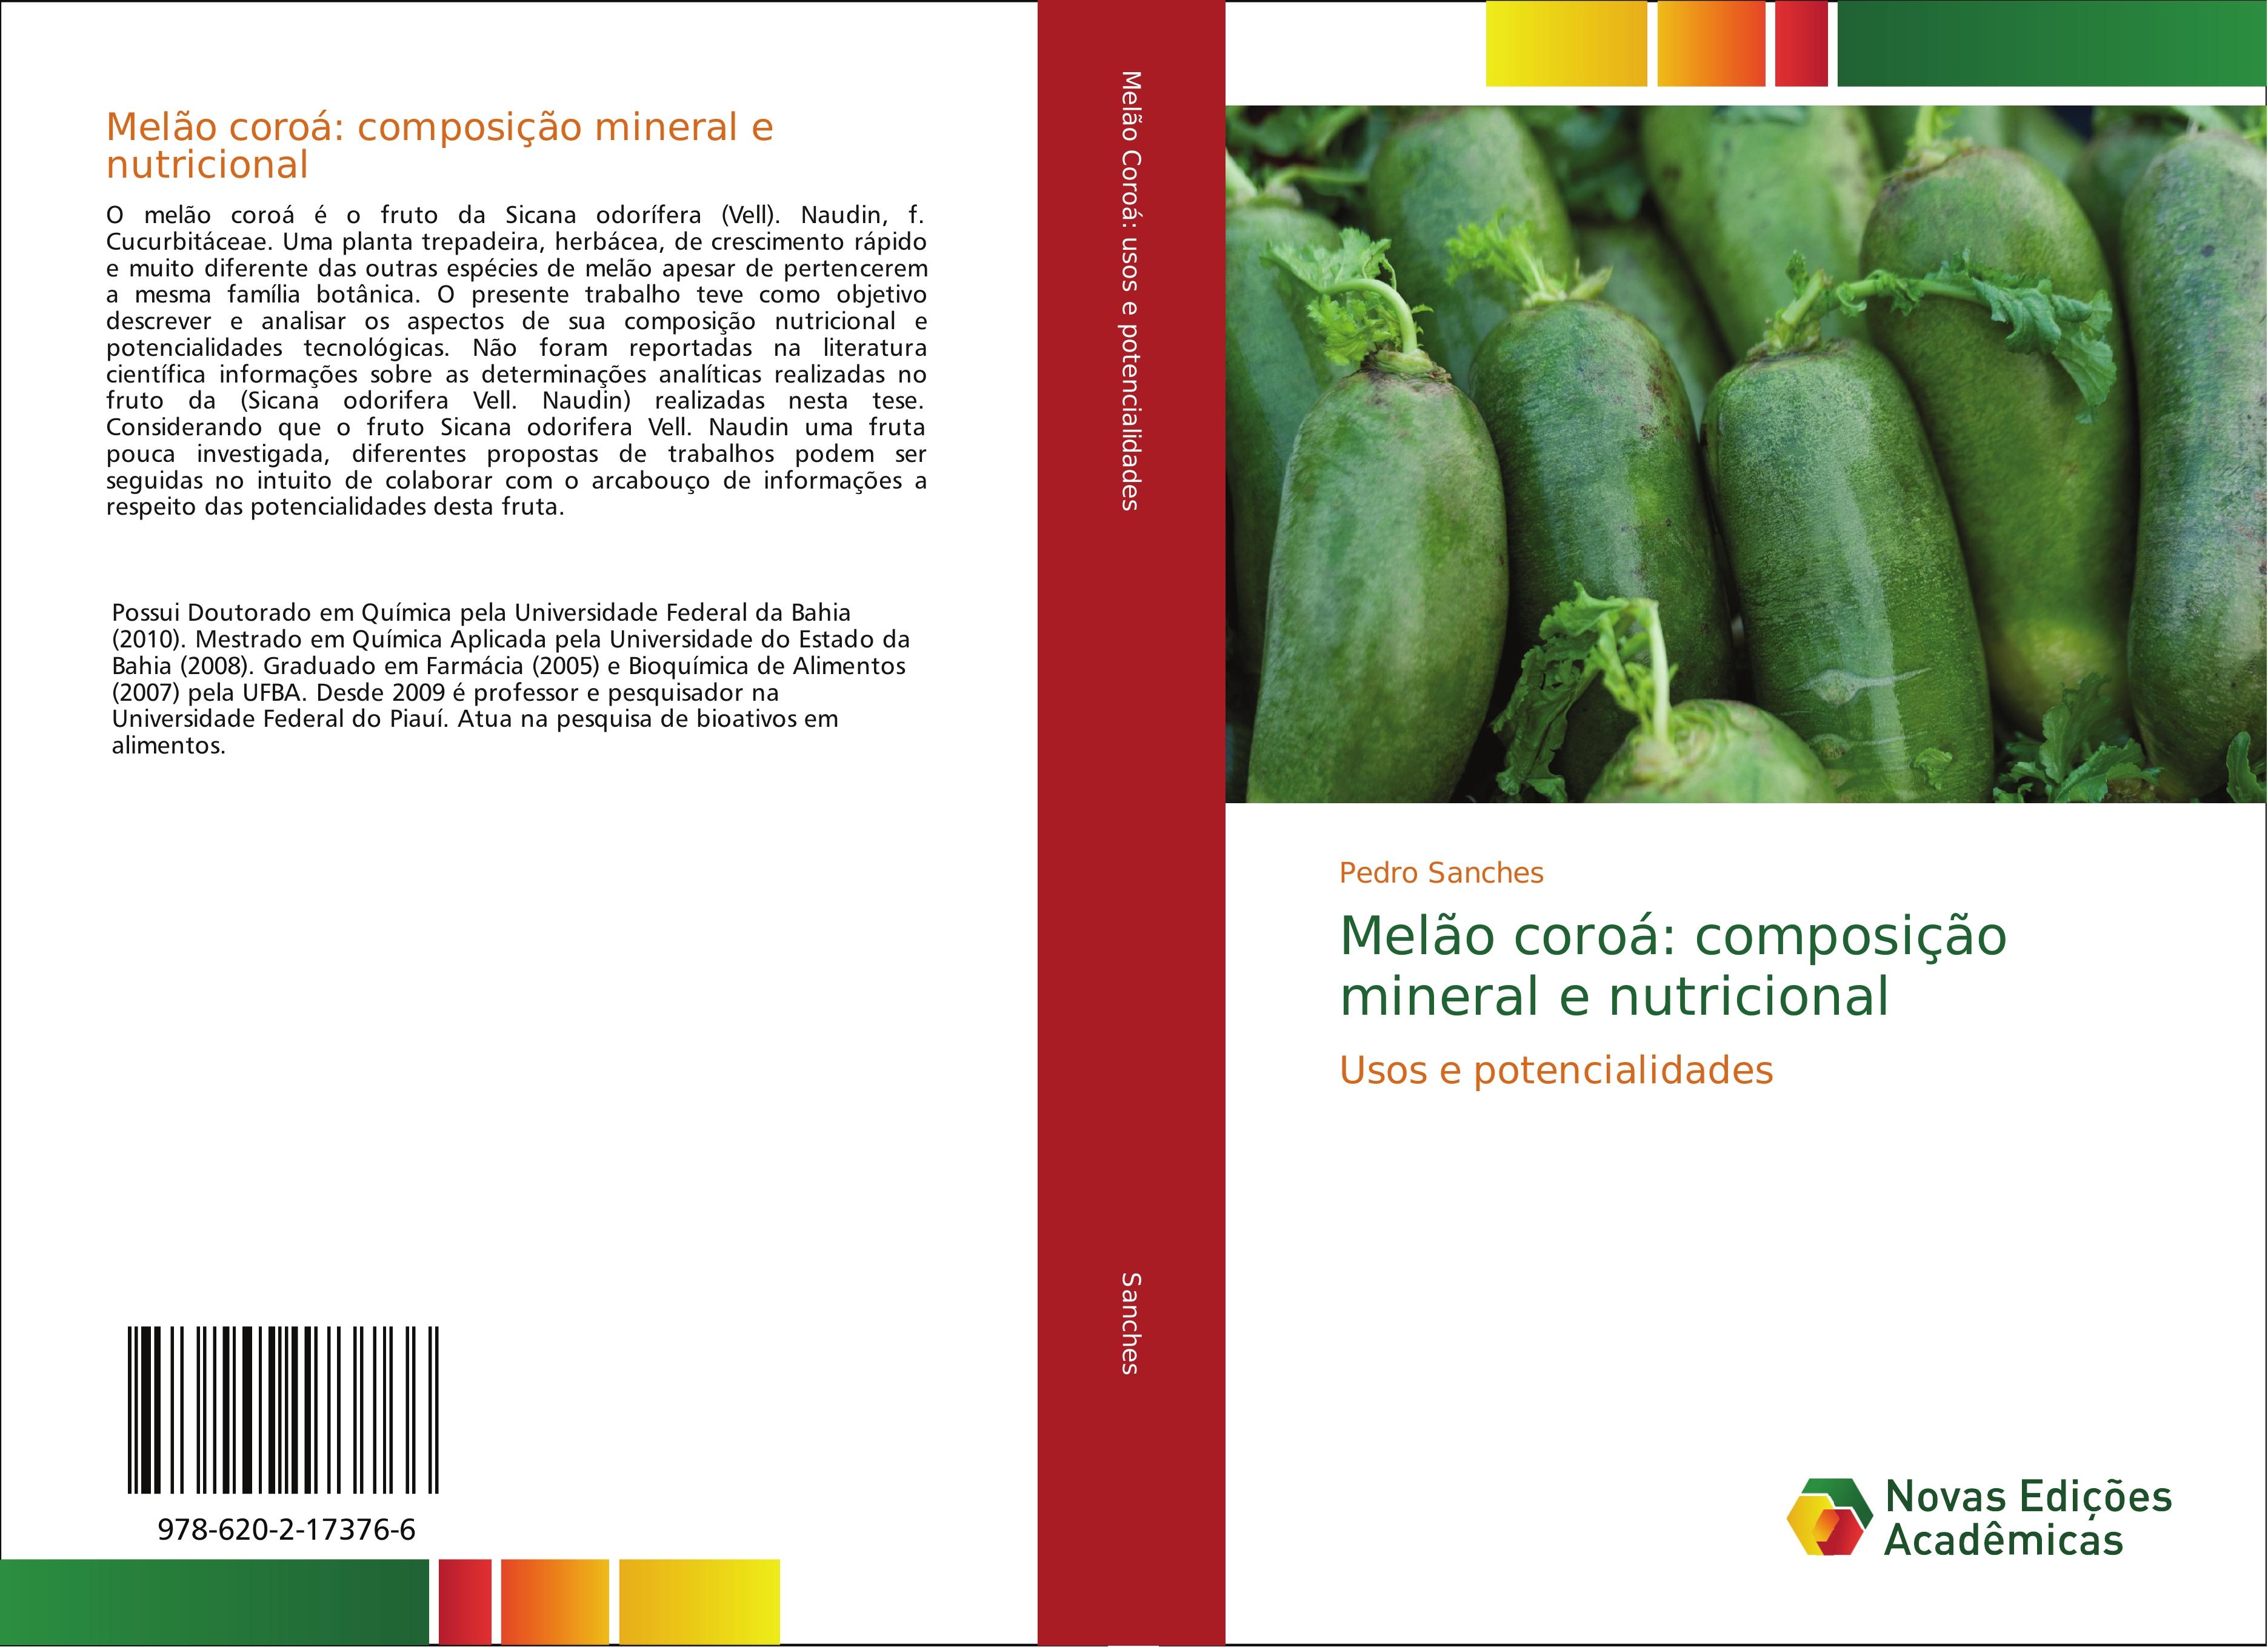 Melão coroá: composição mineral e nutricional - Pedro Sanches